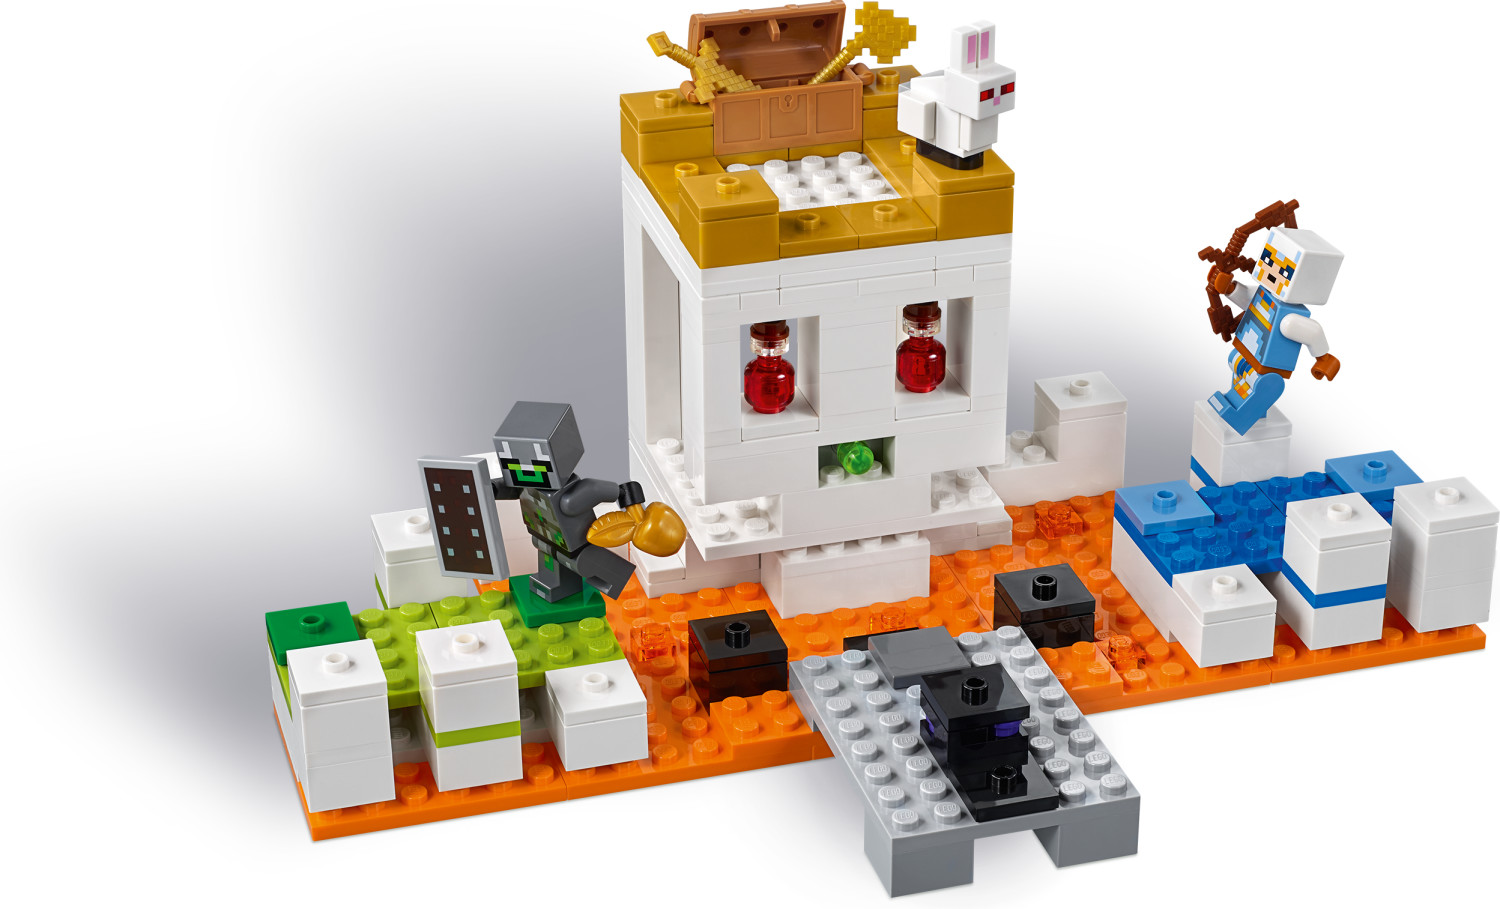 Lego 21145 minecraft - le crâne géant - La Poste